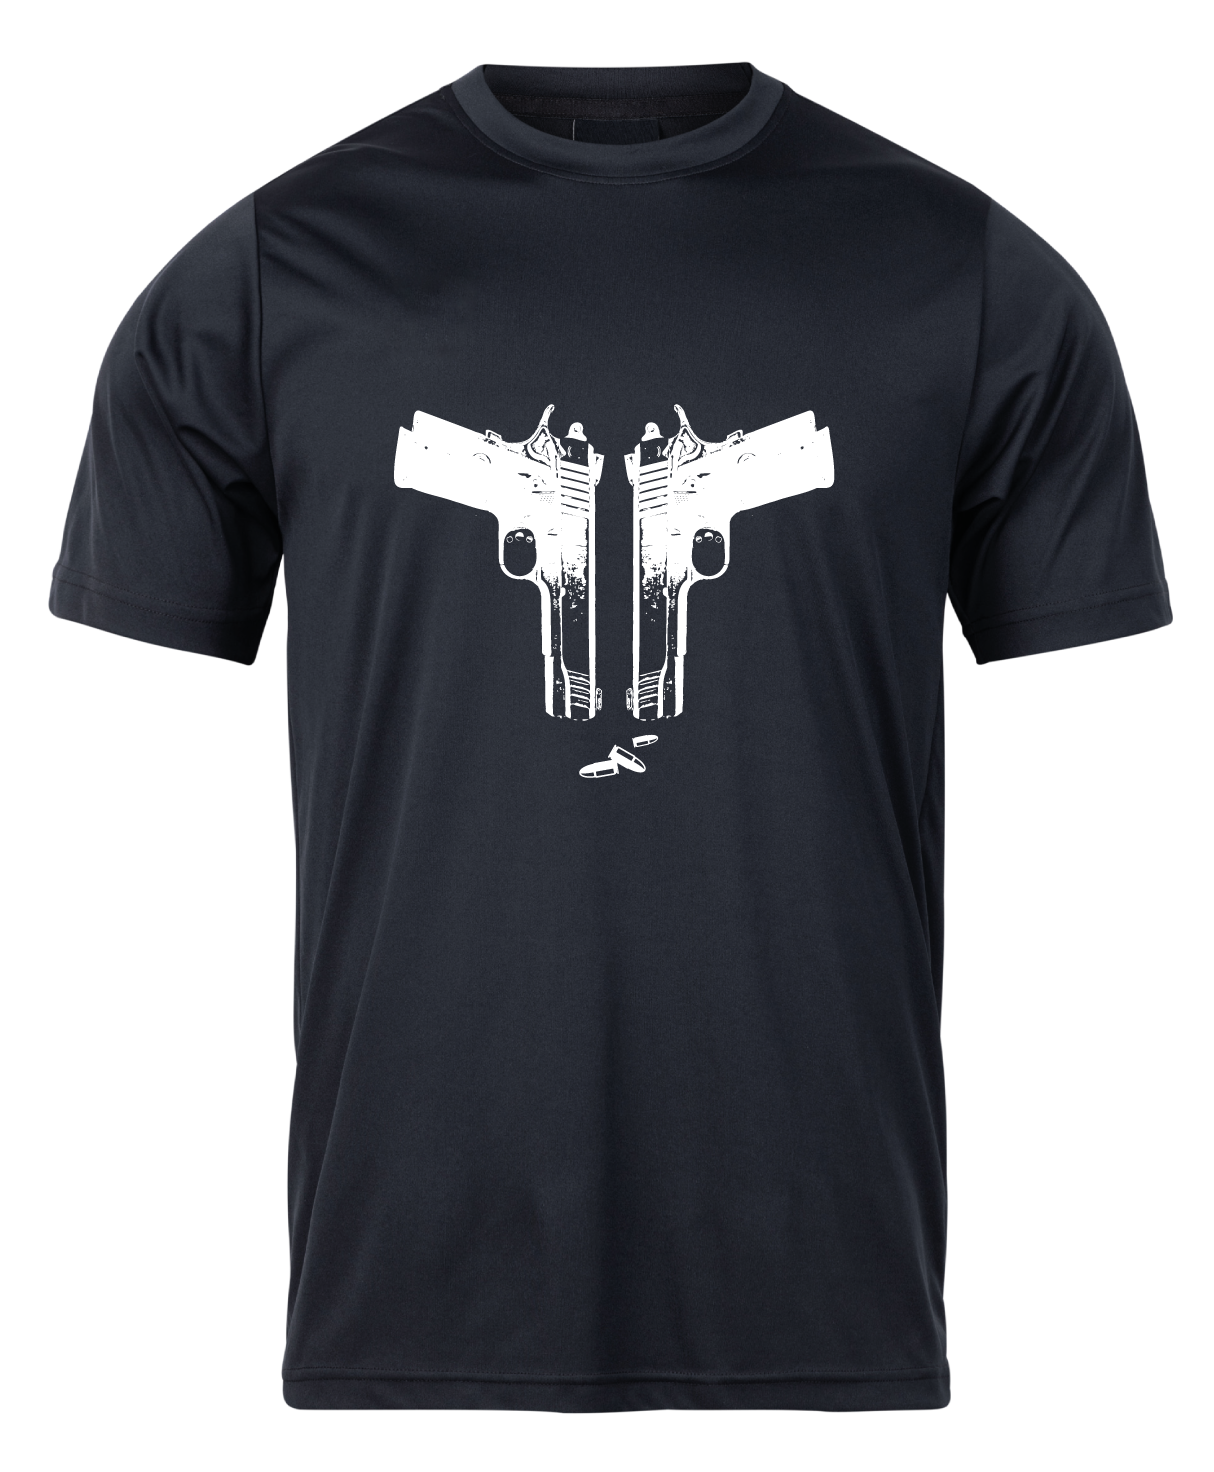 Pánske poľovnícke tričko TETRAO zbrane - čierne   L